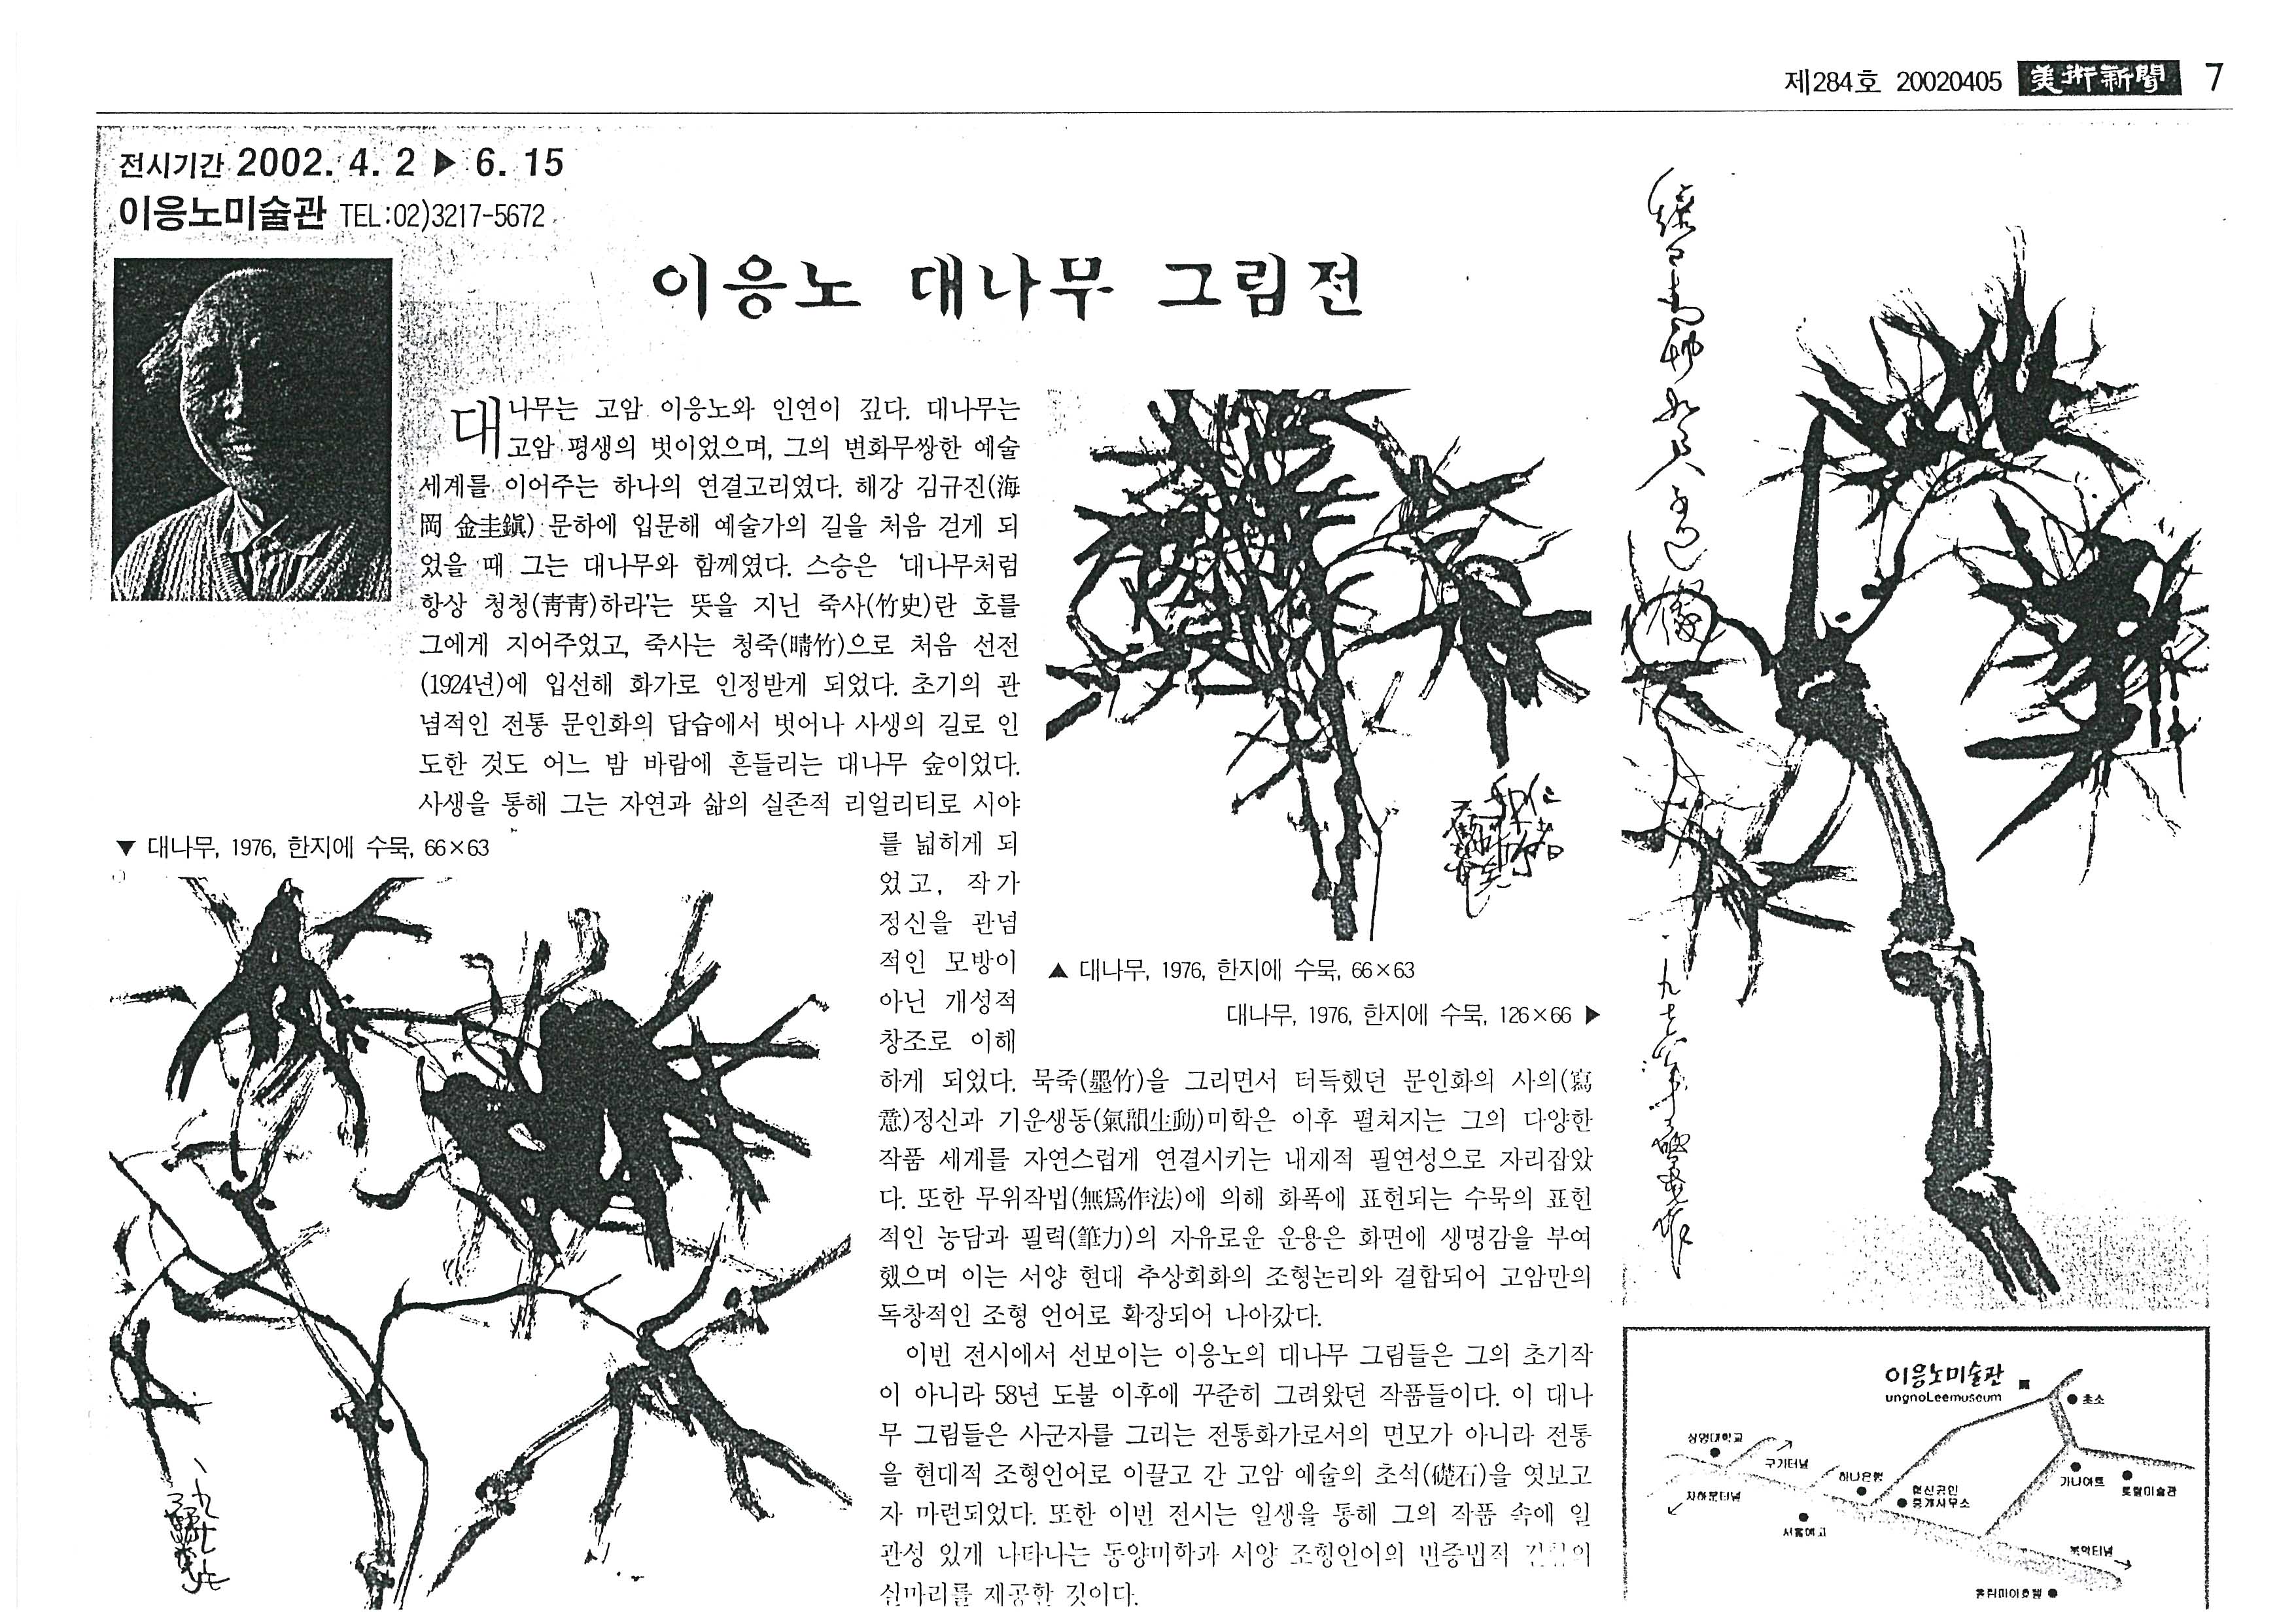  「이응노 대나무 그림전」, 『미술신문』 